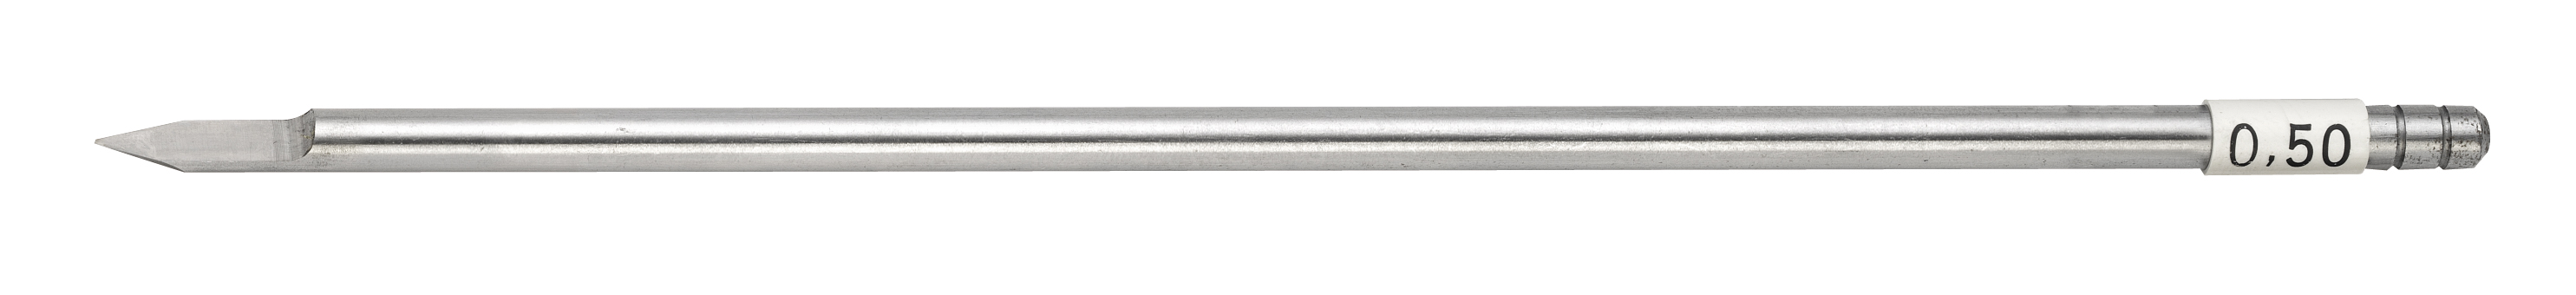 HSS cutter, shaft dia. 4.36 mm, width 0.50 mm Gravograph